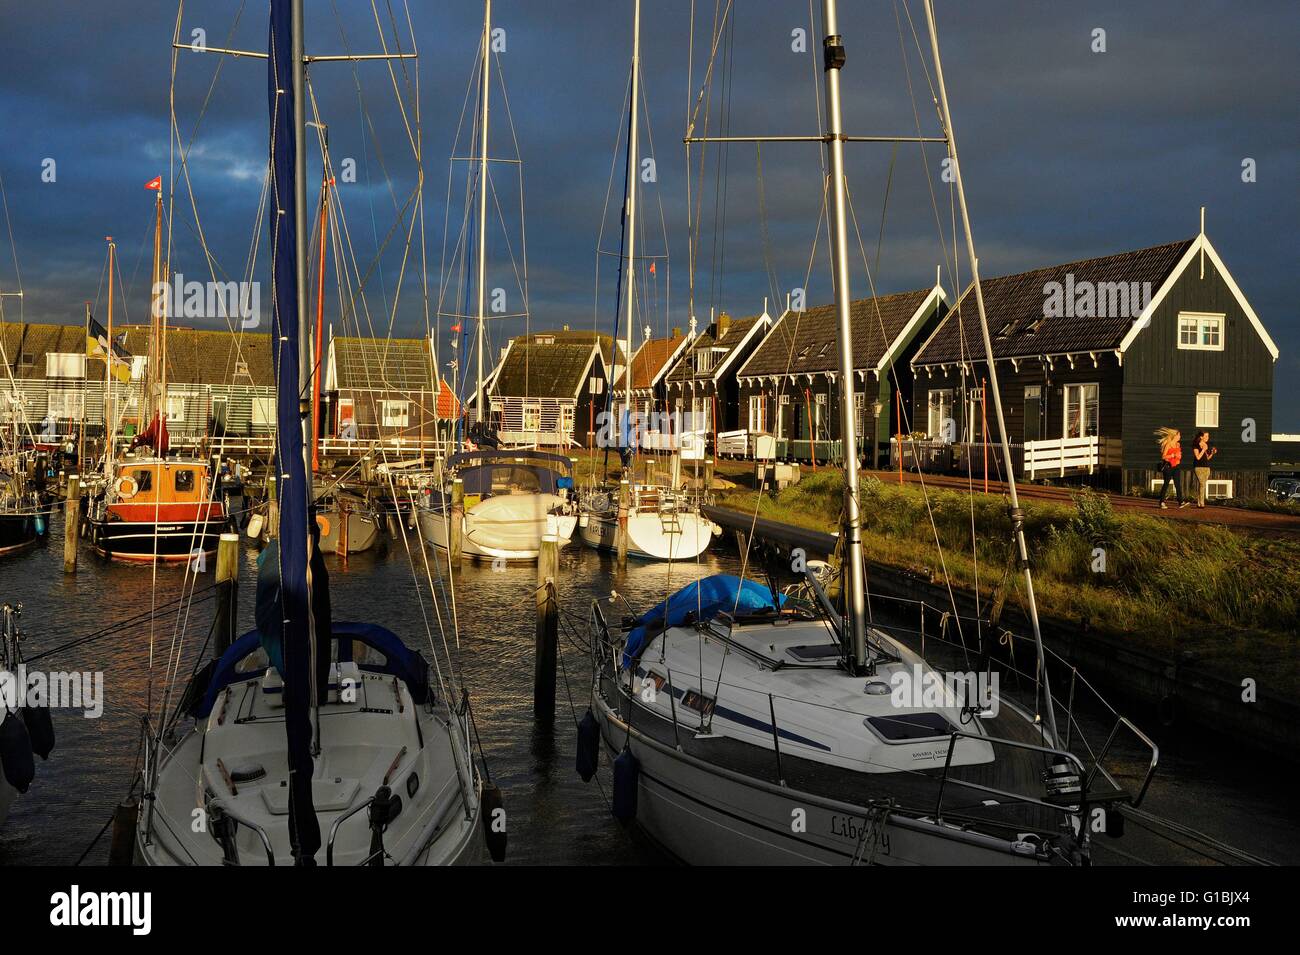 Netherlands, Holland, Waterland Marken, Sunset on the harbor Stock Photo